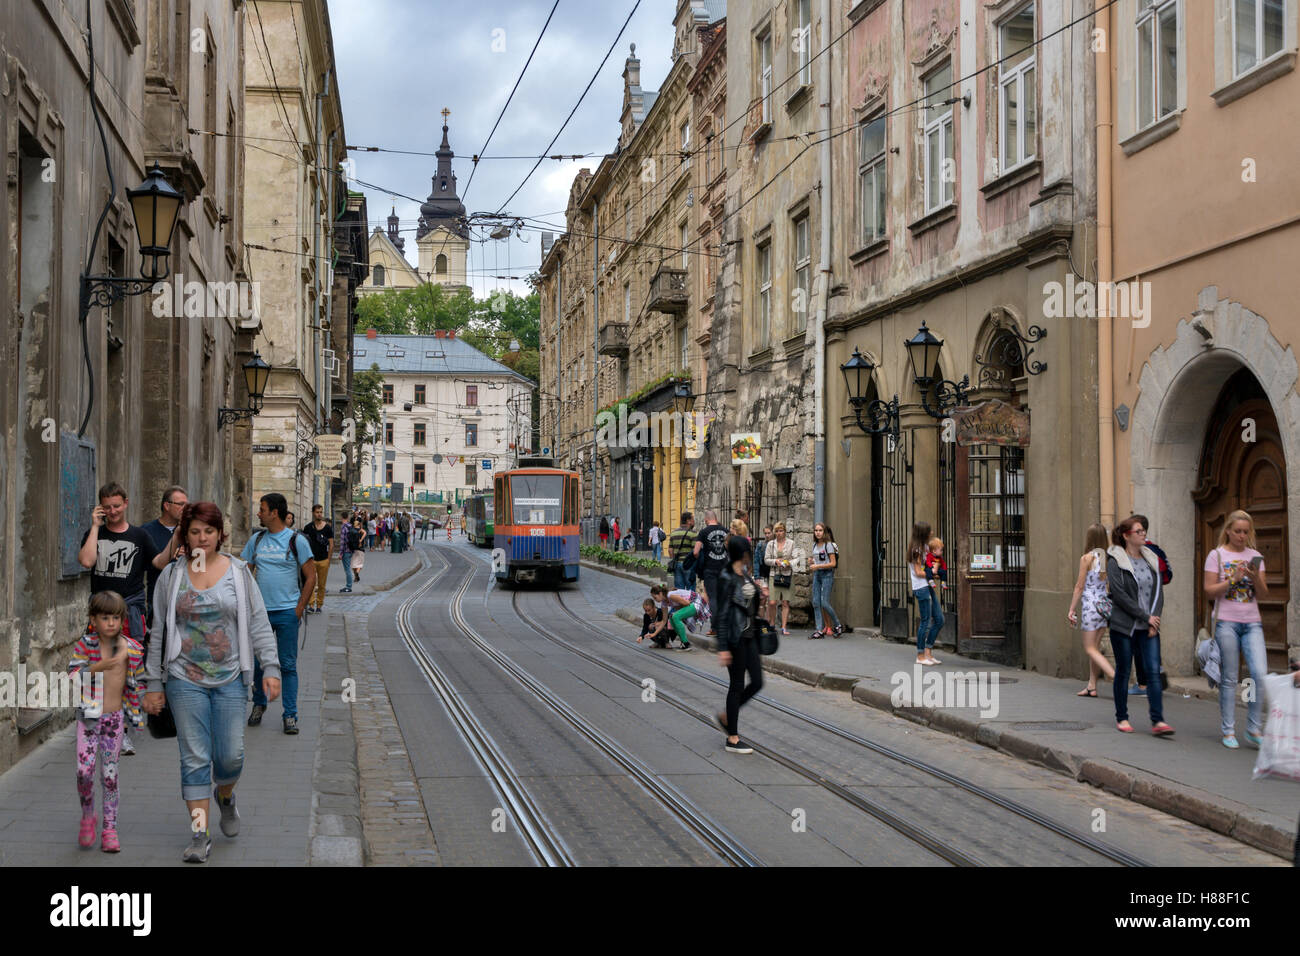 Ruska Street View, cerca de la plaza de Rynok y San Miguel de la Iglesia católica ucraniana en la procedencia de Lviv, Ucrania Foto de stock